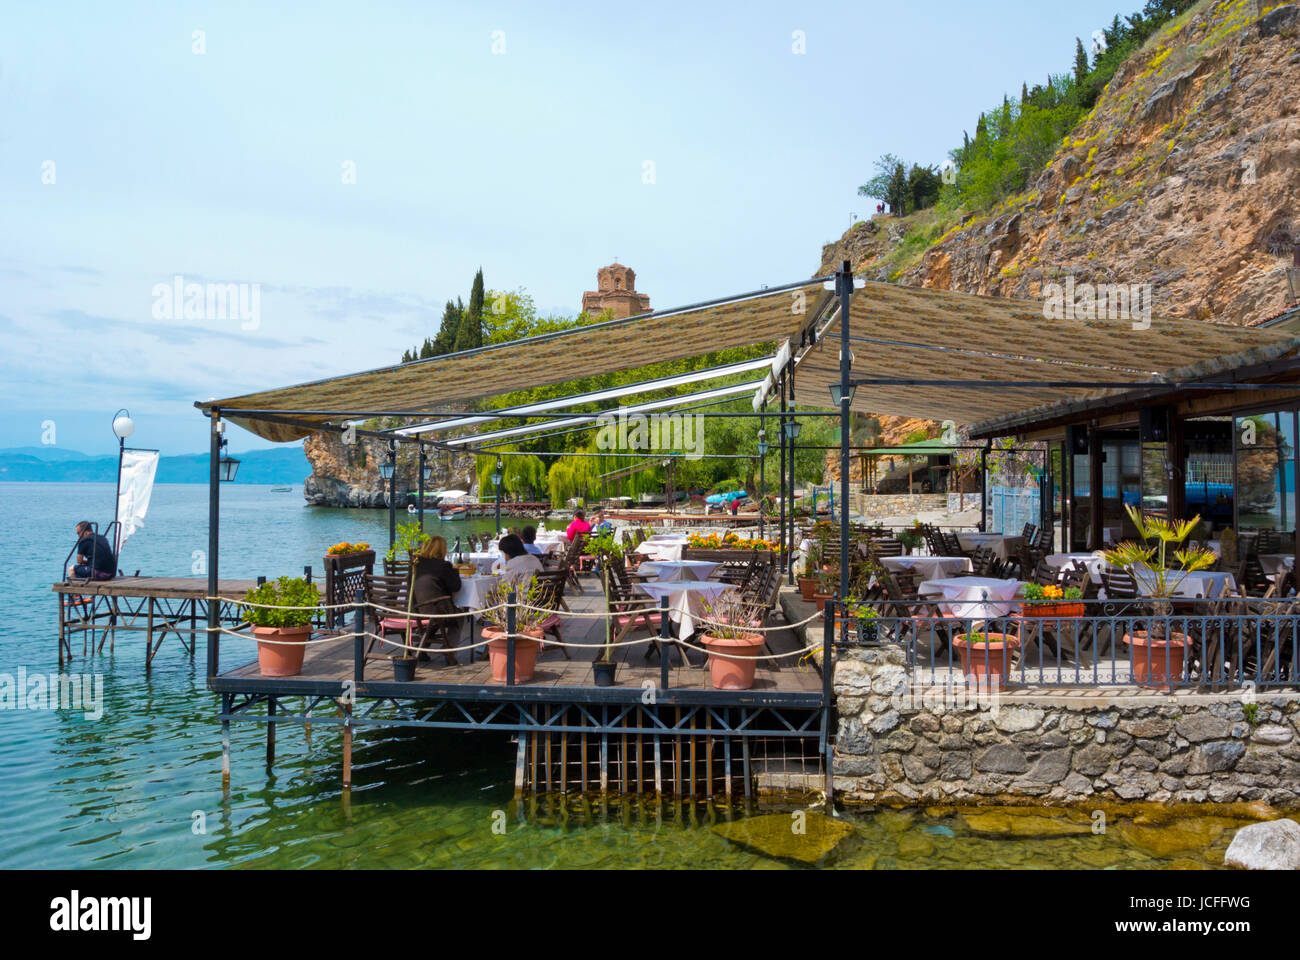 Ristorante terrazza in riva al lago, a Kaneo beach, con San Giovanni a Kaneo chiesa in background, Ohrid Macedonia Foto Stock